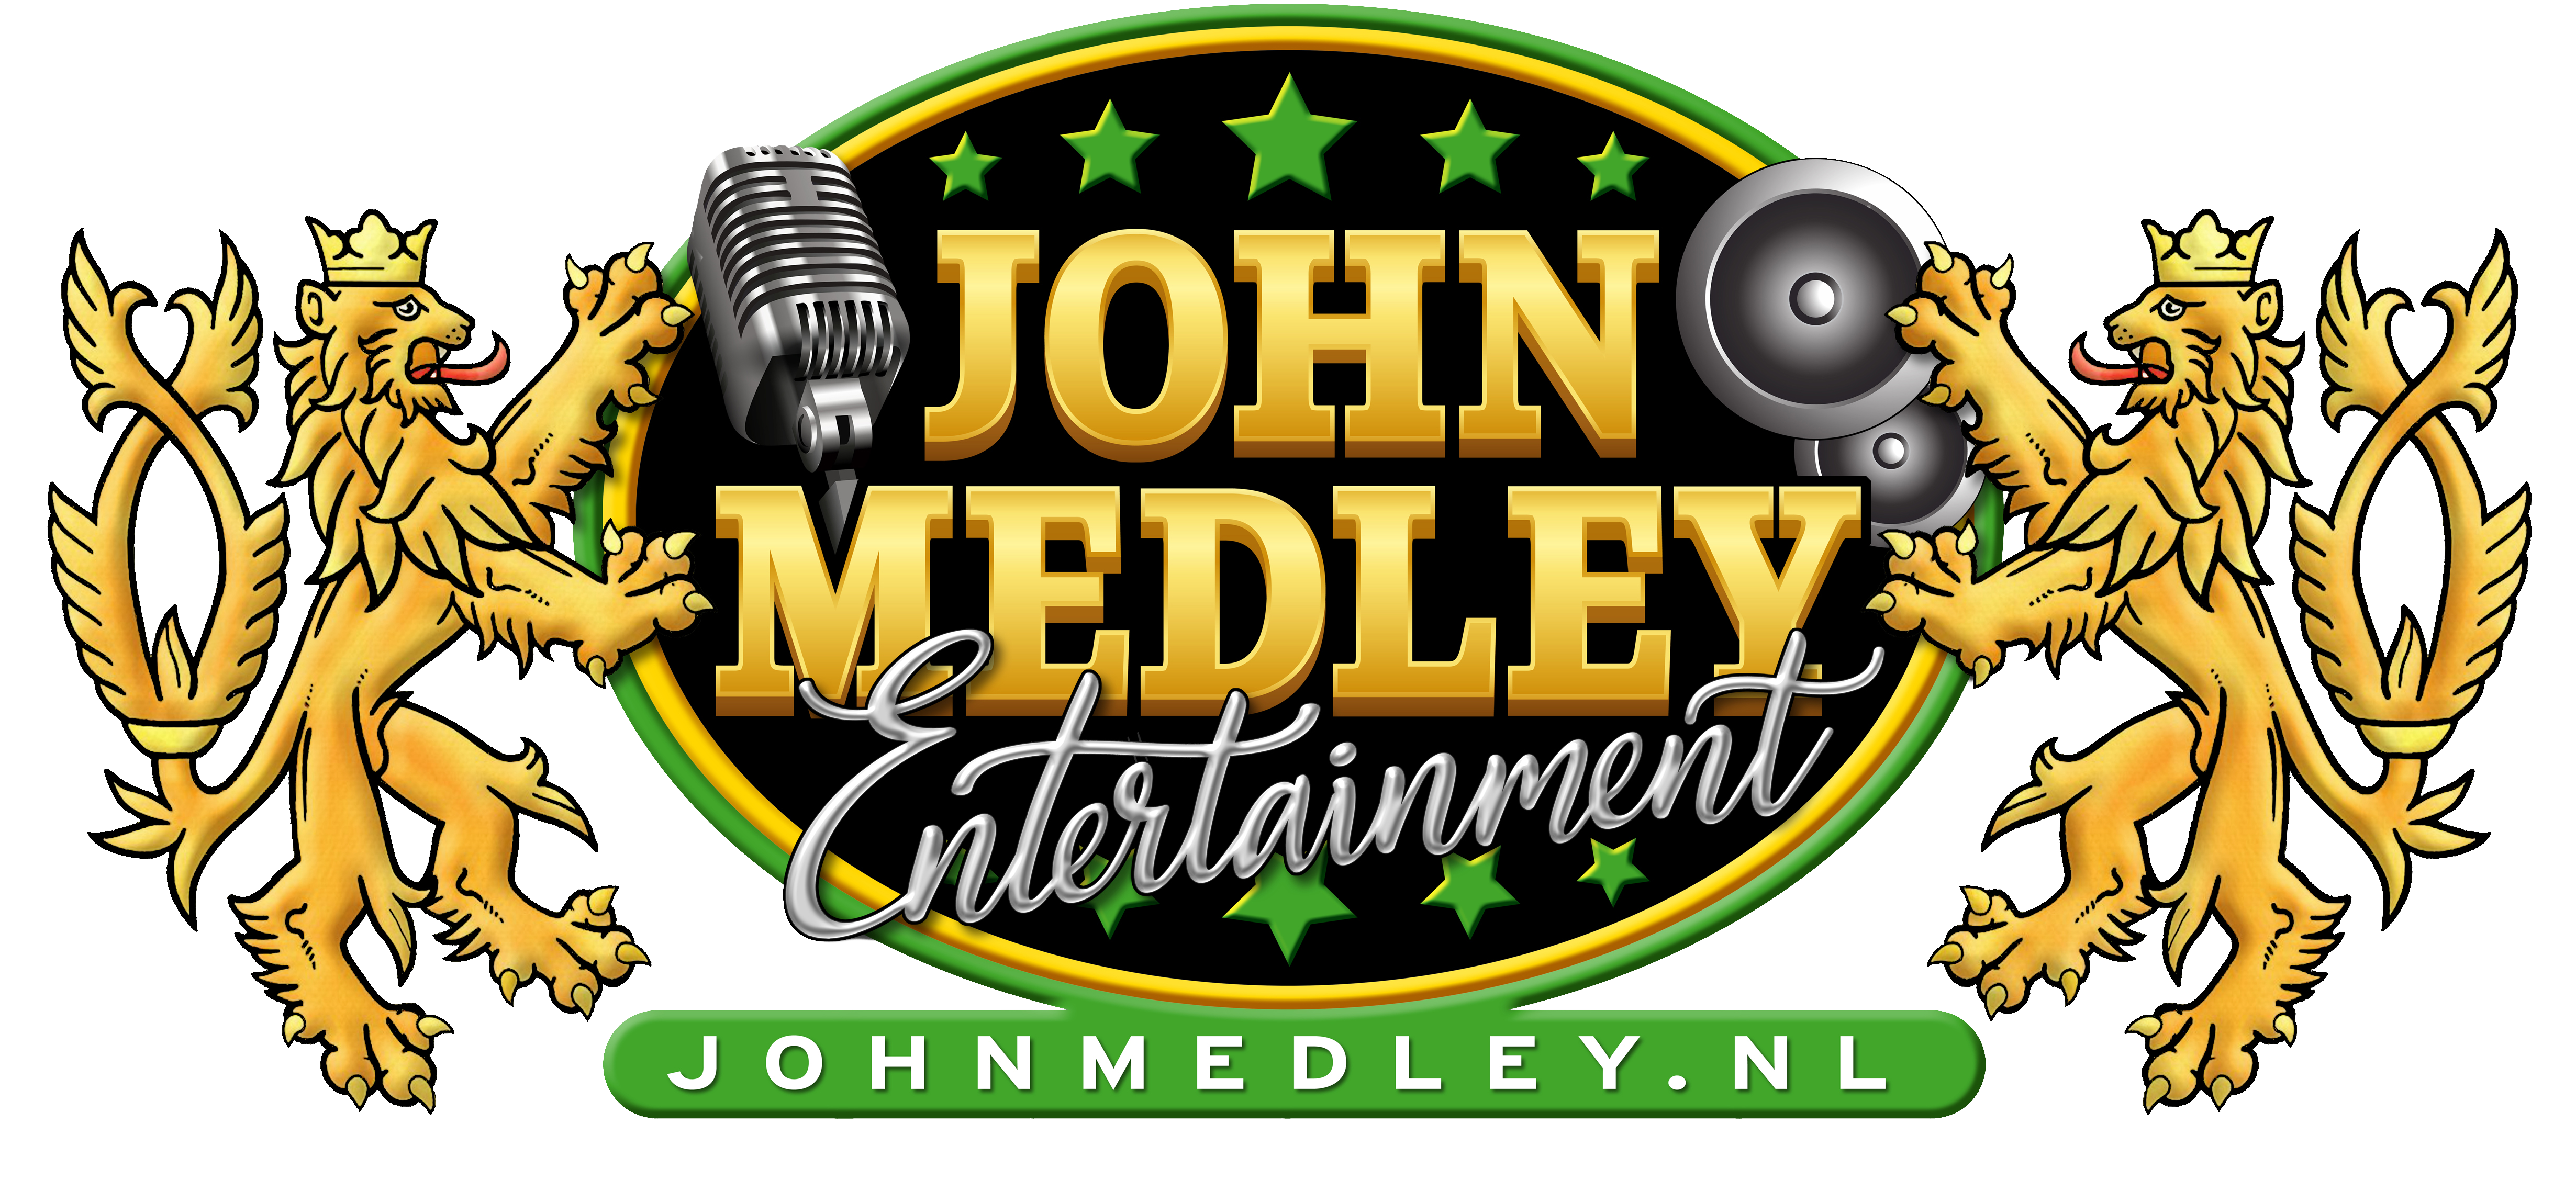 JM-entertainment-logo